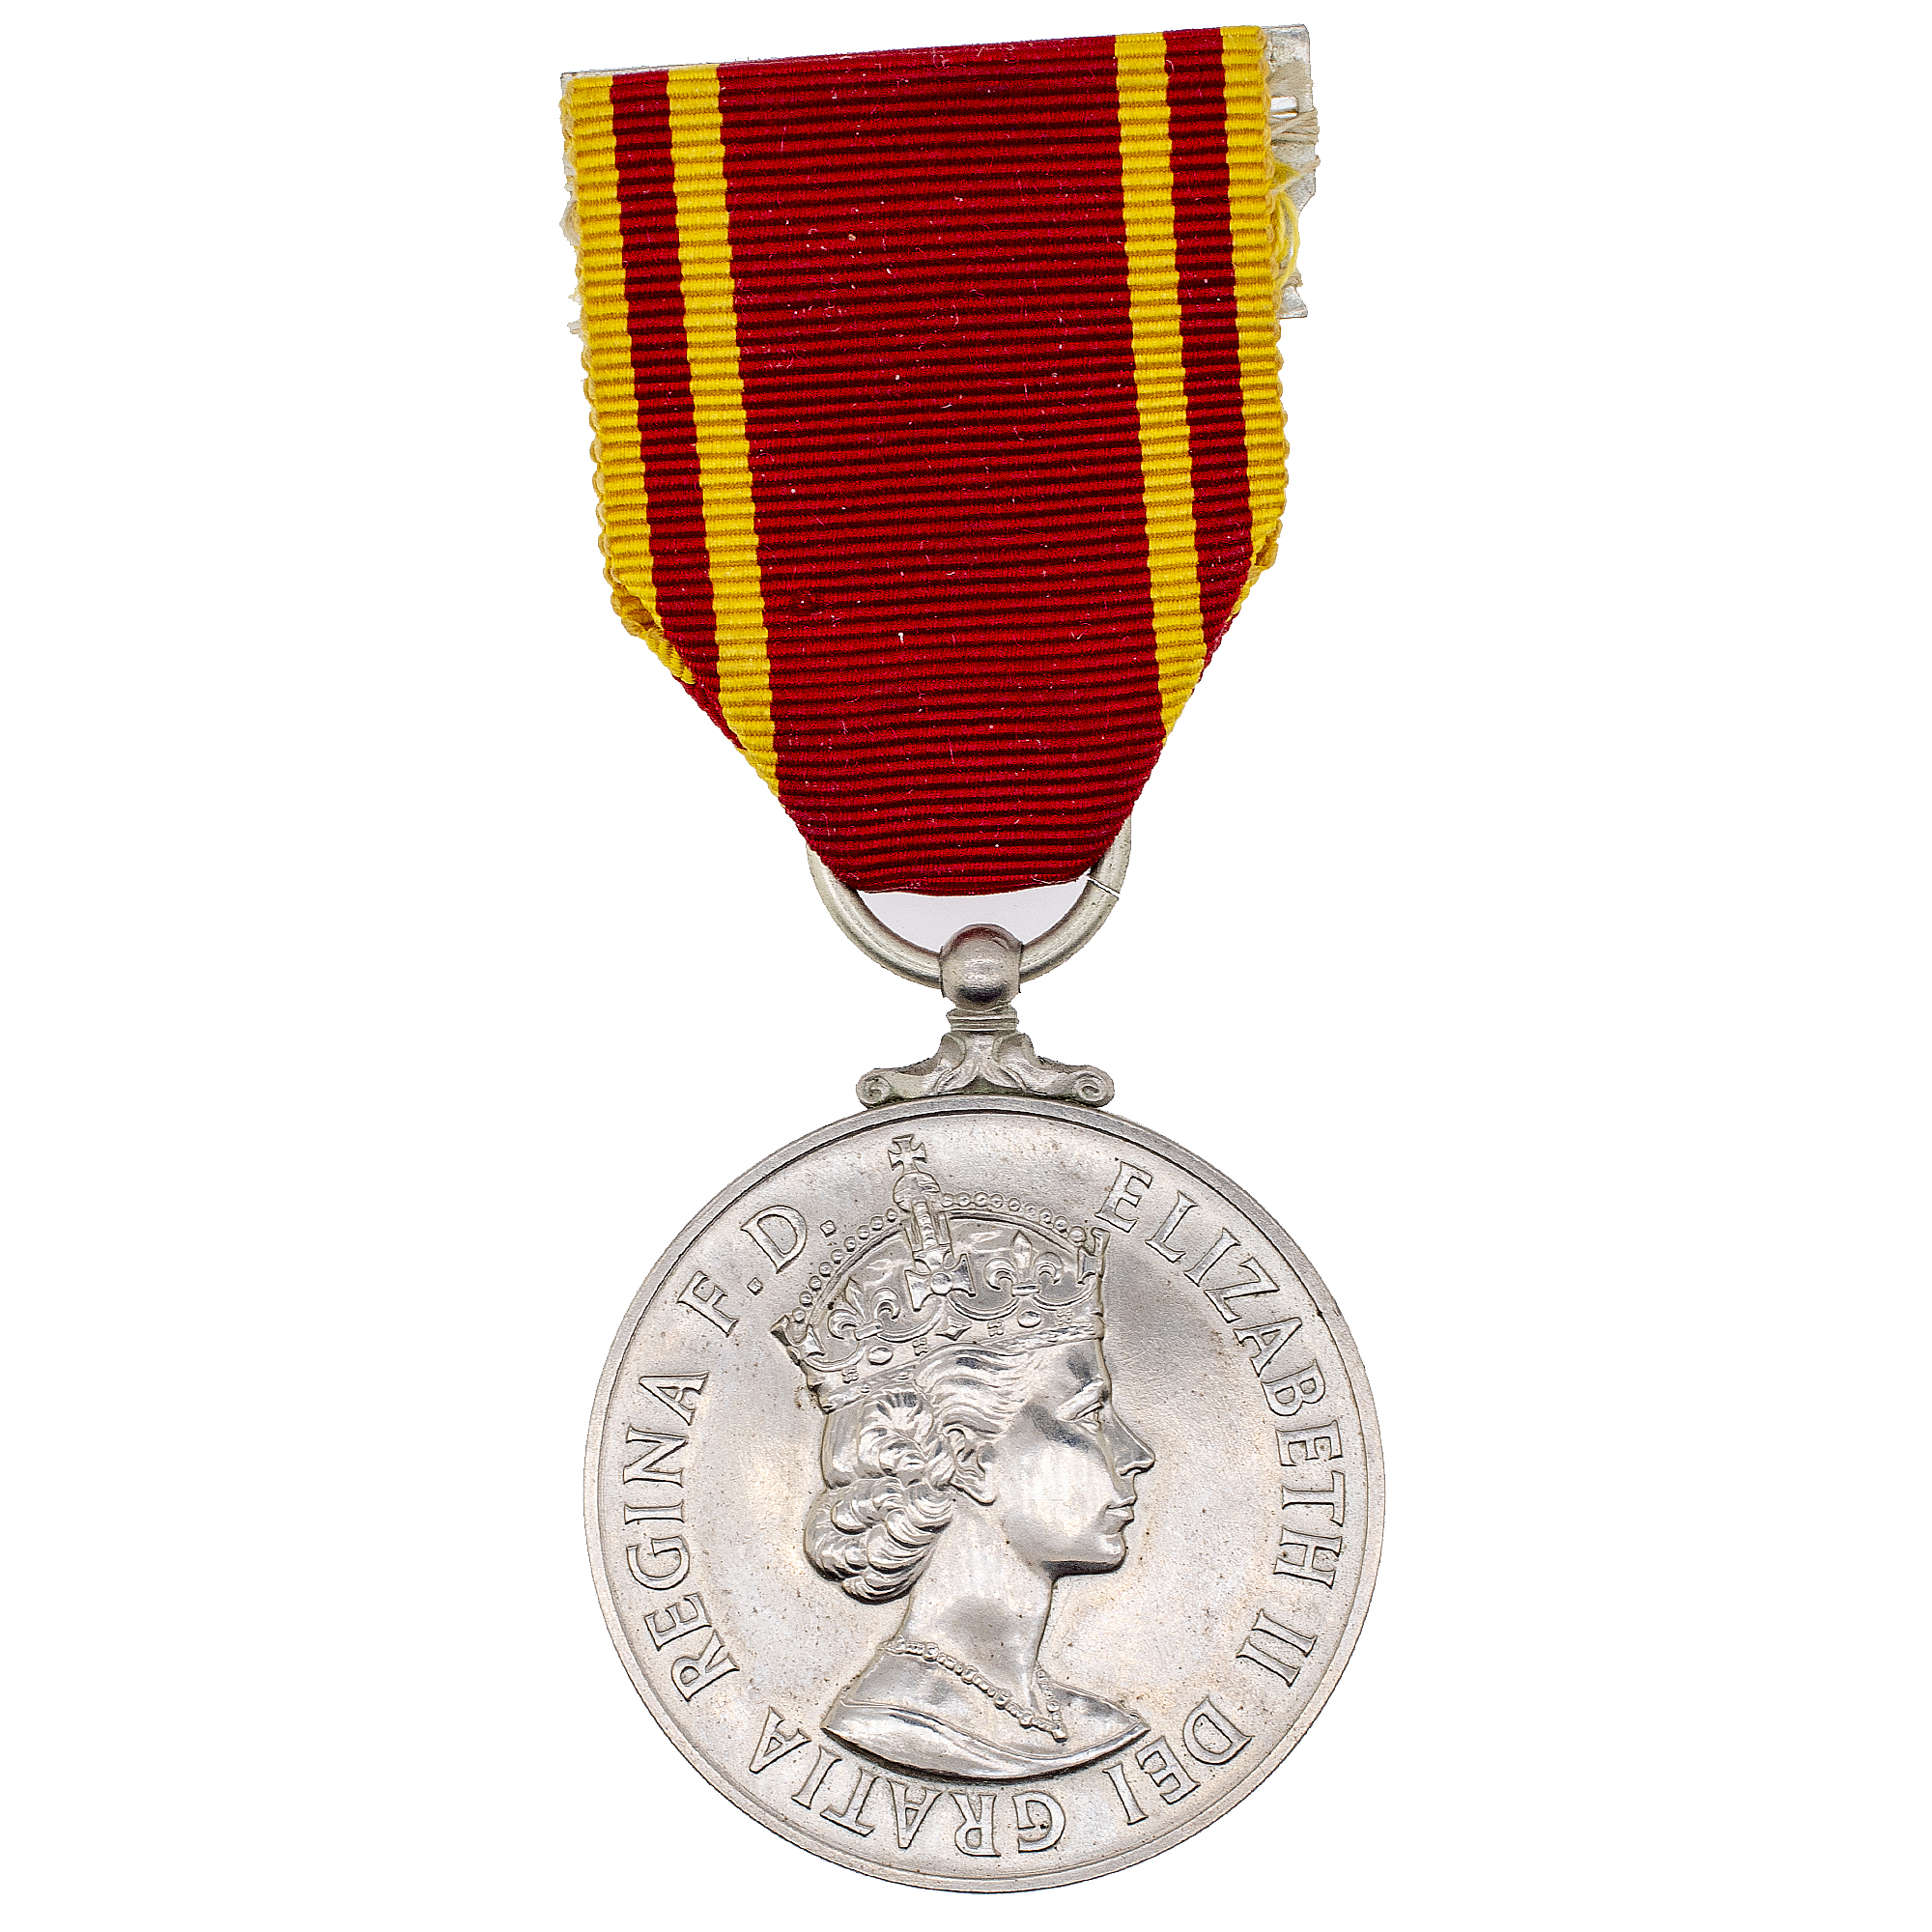 Великобритания. Медаль пожарно-спасательной службы "За долгую службу и примерное поведение" СВ 4251.